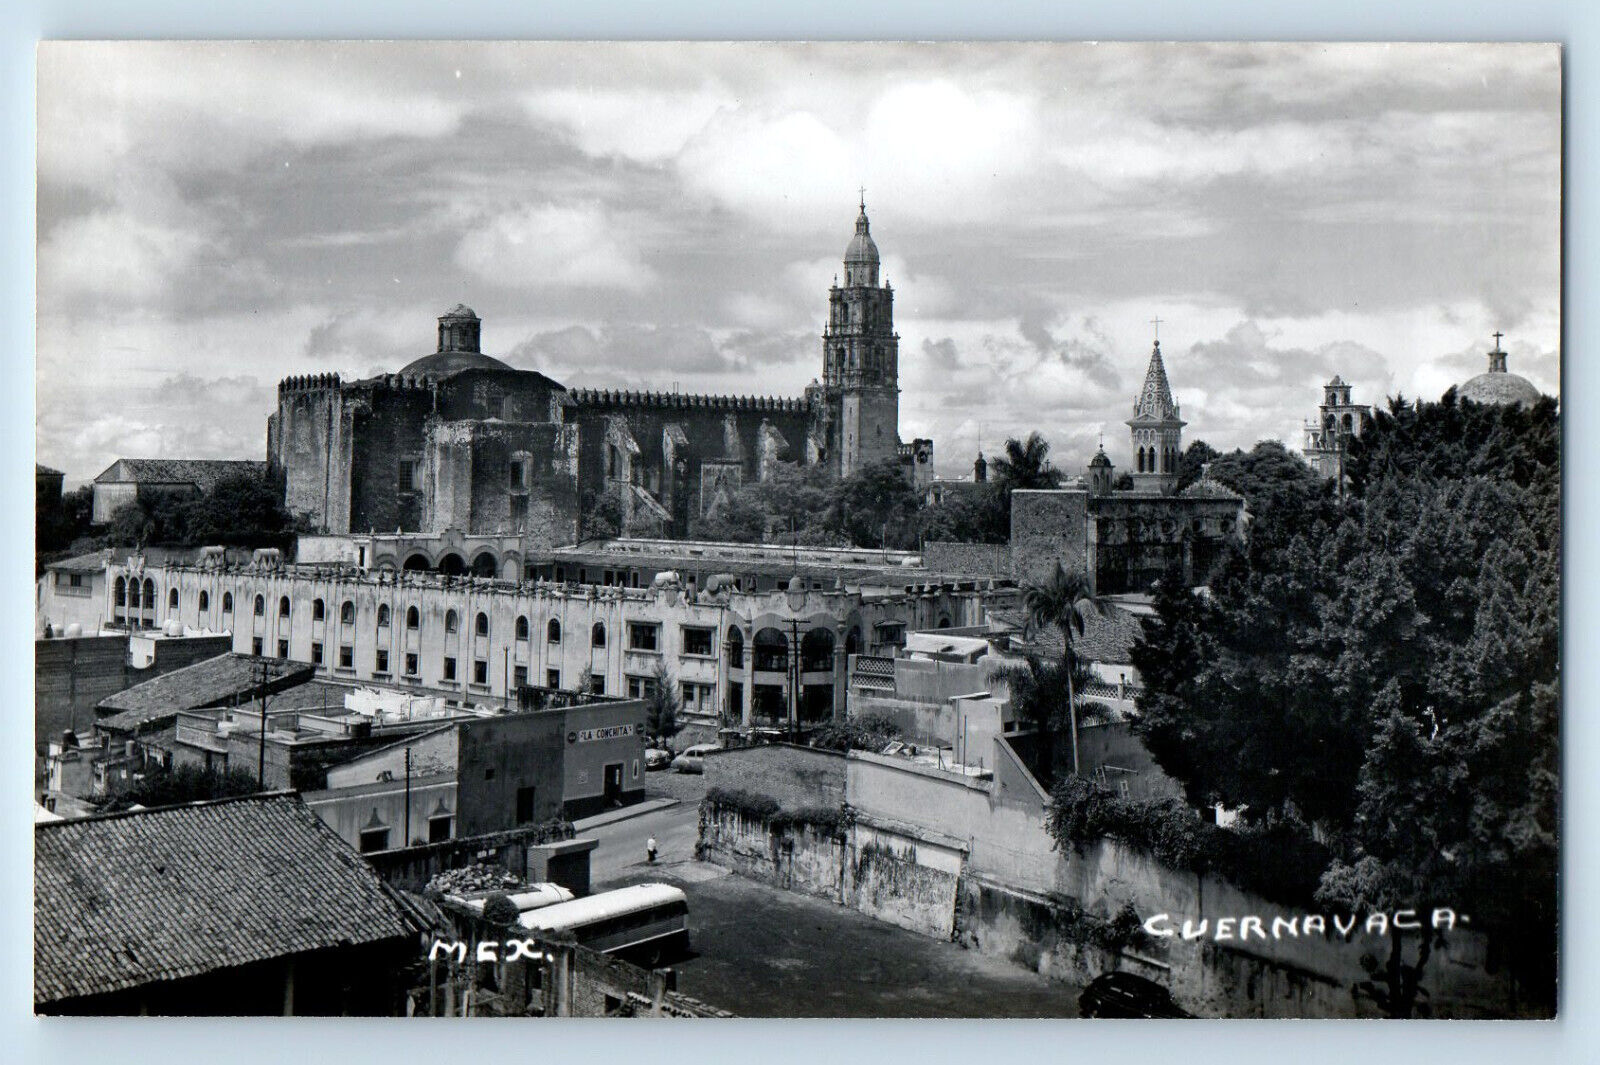 Cuernavaca Morelos Mexico Postcard View of Church Buildings c1960's RPPC Photo